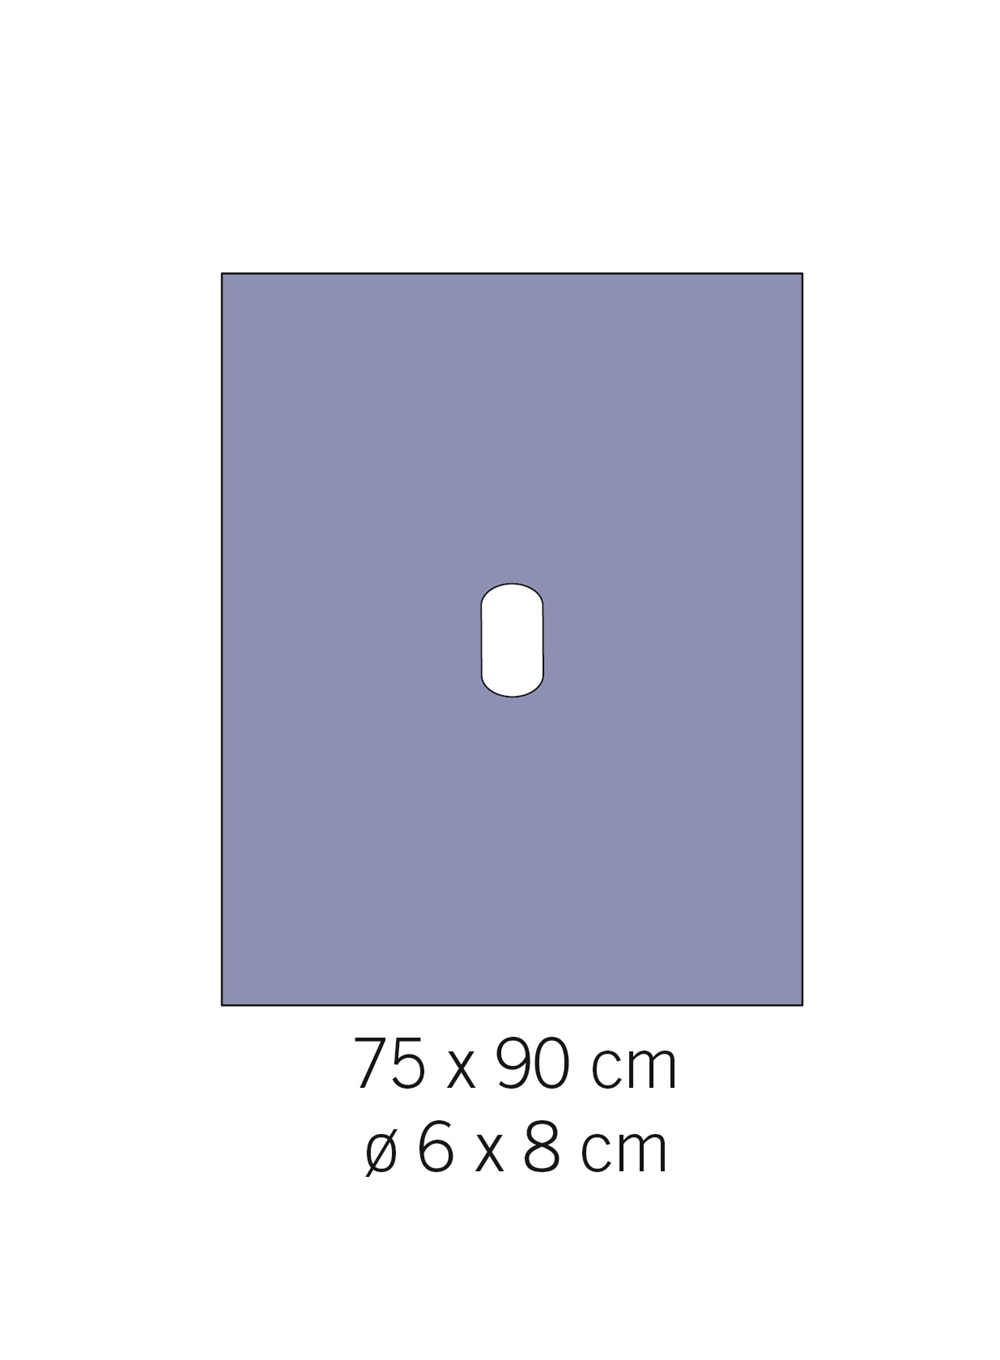 Hålduk evercare - 75x90cm hål 6x8cm - 100 st